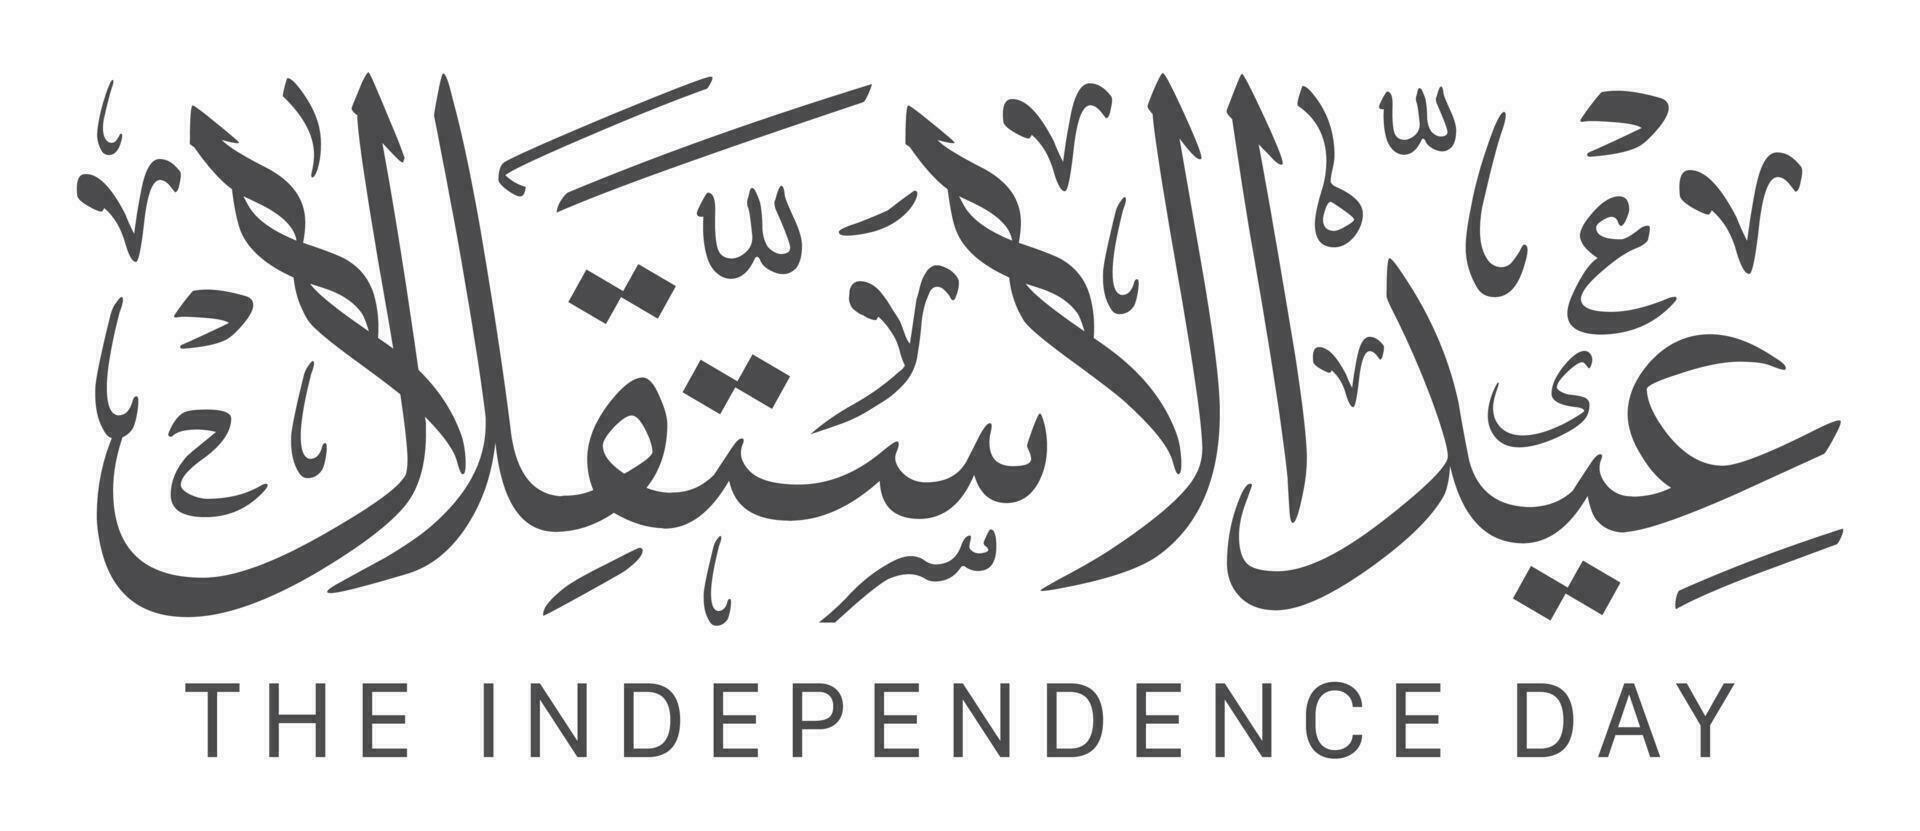 contento independencia día saludo tipografía caligrafía texto vector ilustración. Traducción el independencia día.